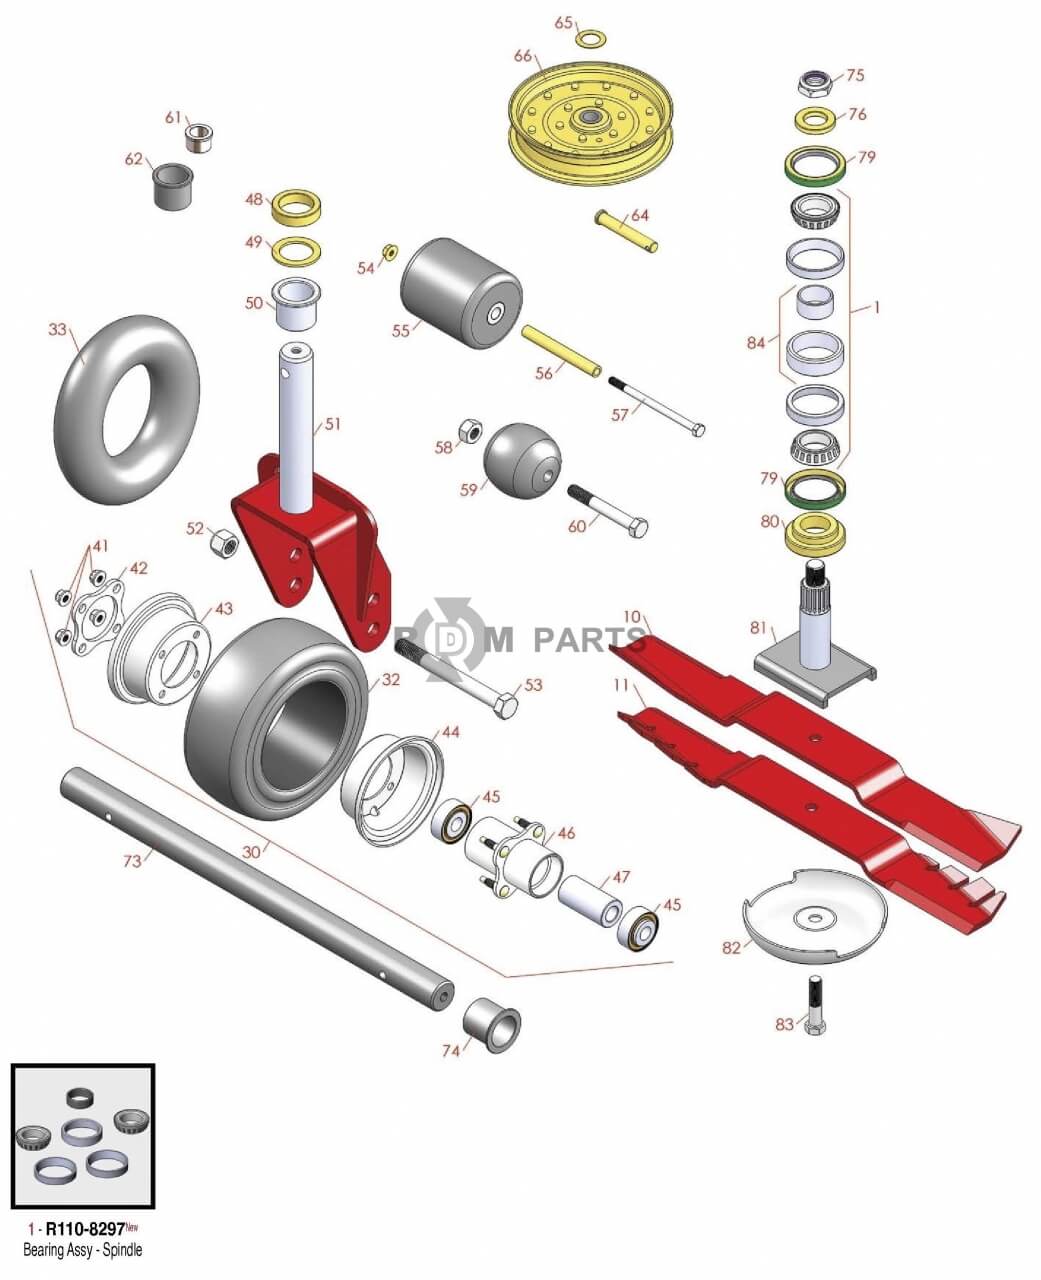 Replacement parts for Toro 4000D & 4010D deck parts Model 30415 30416 & 30417